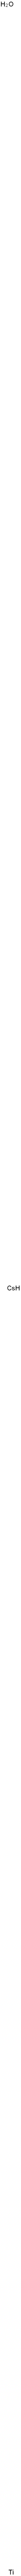 12158-57-5 酸化セシウムチタン